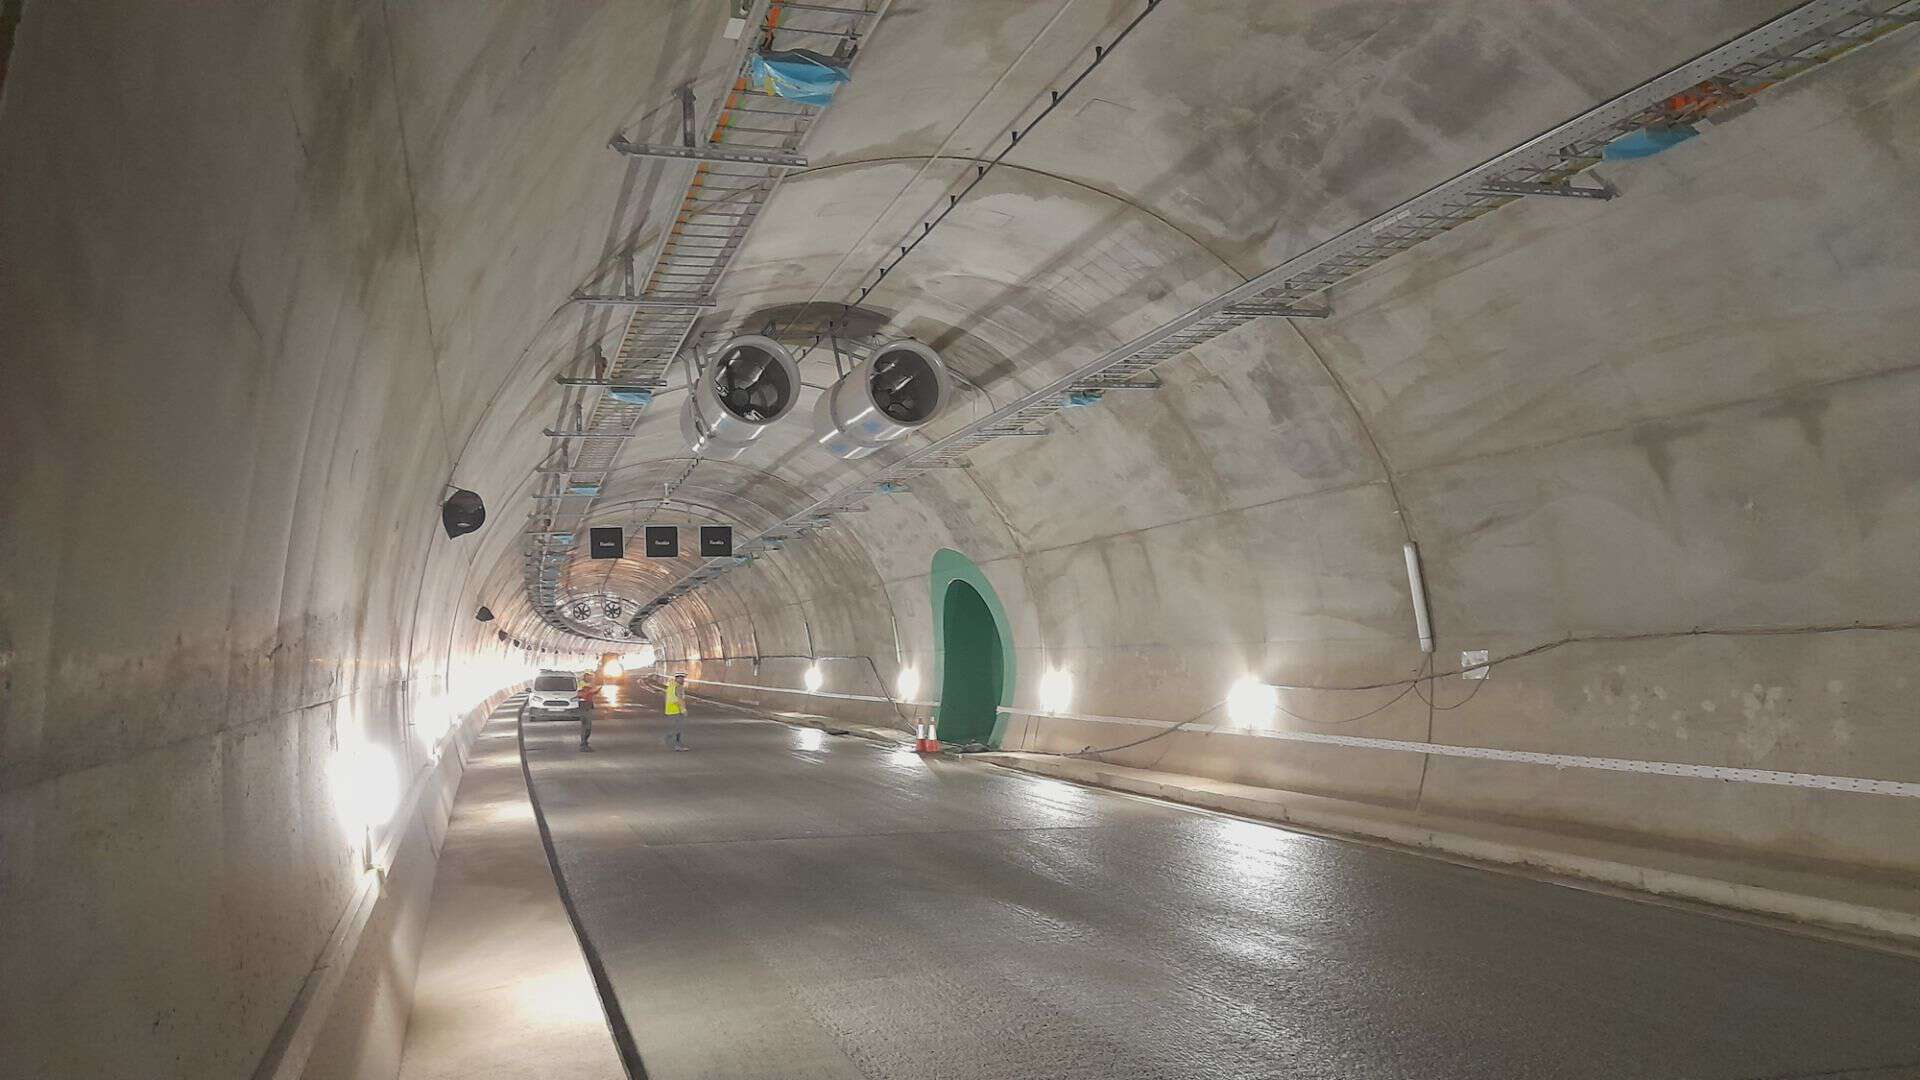 Inaugurazione del tunnel di Lilla (A-27) che collega Tarragona e Lleida in Catalogna